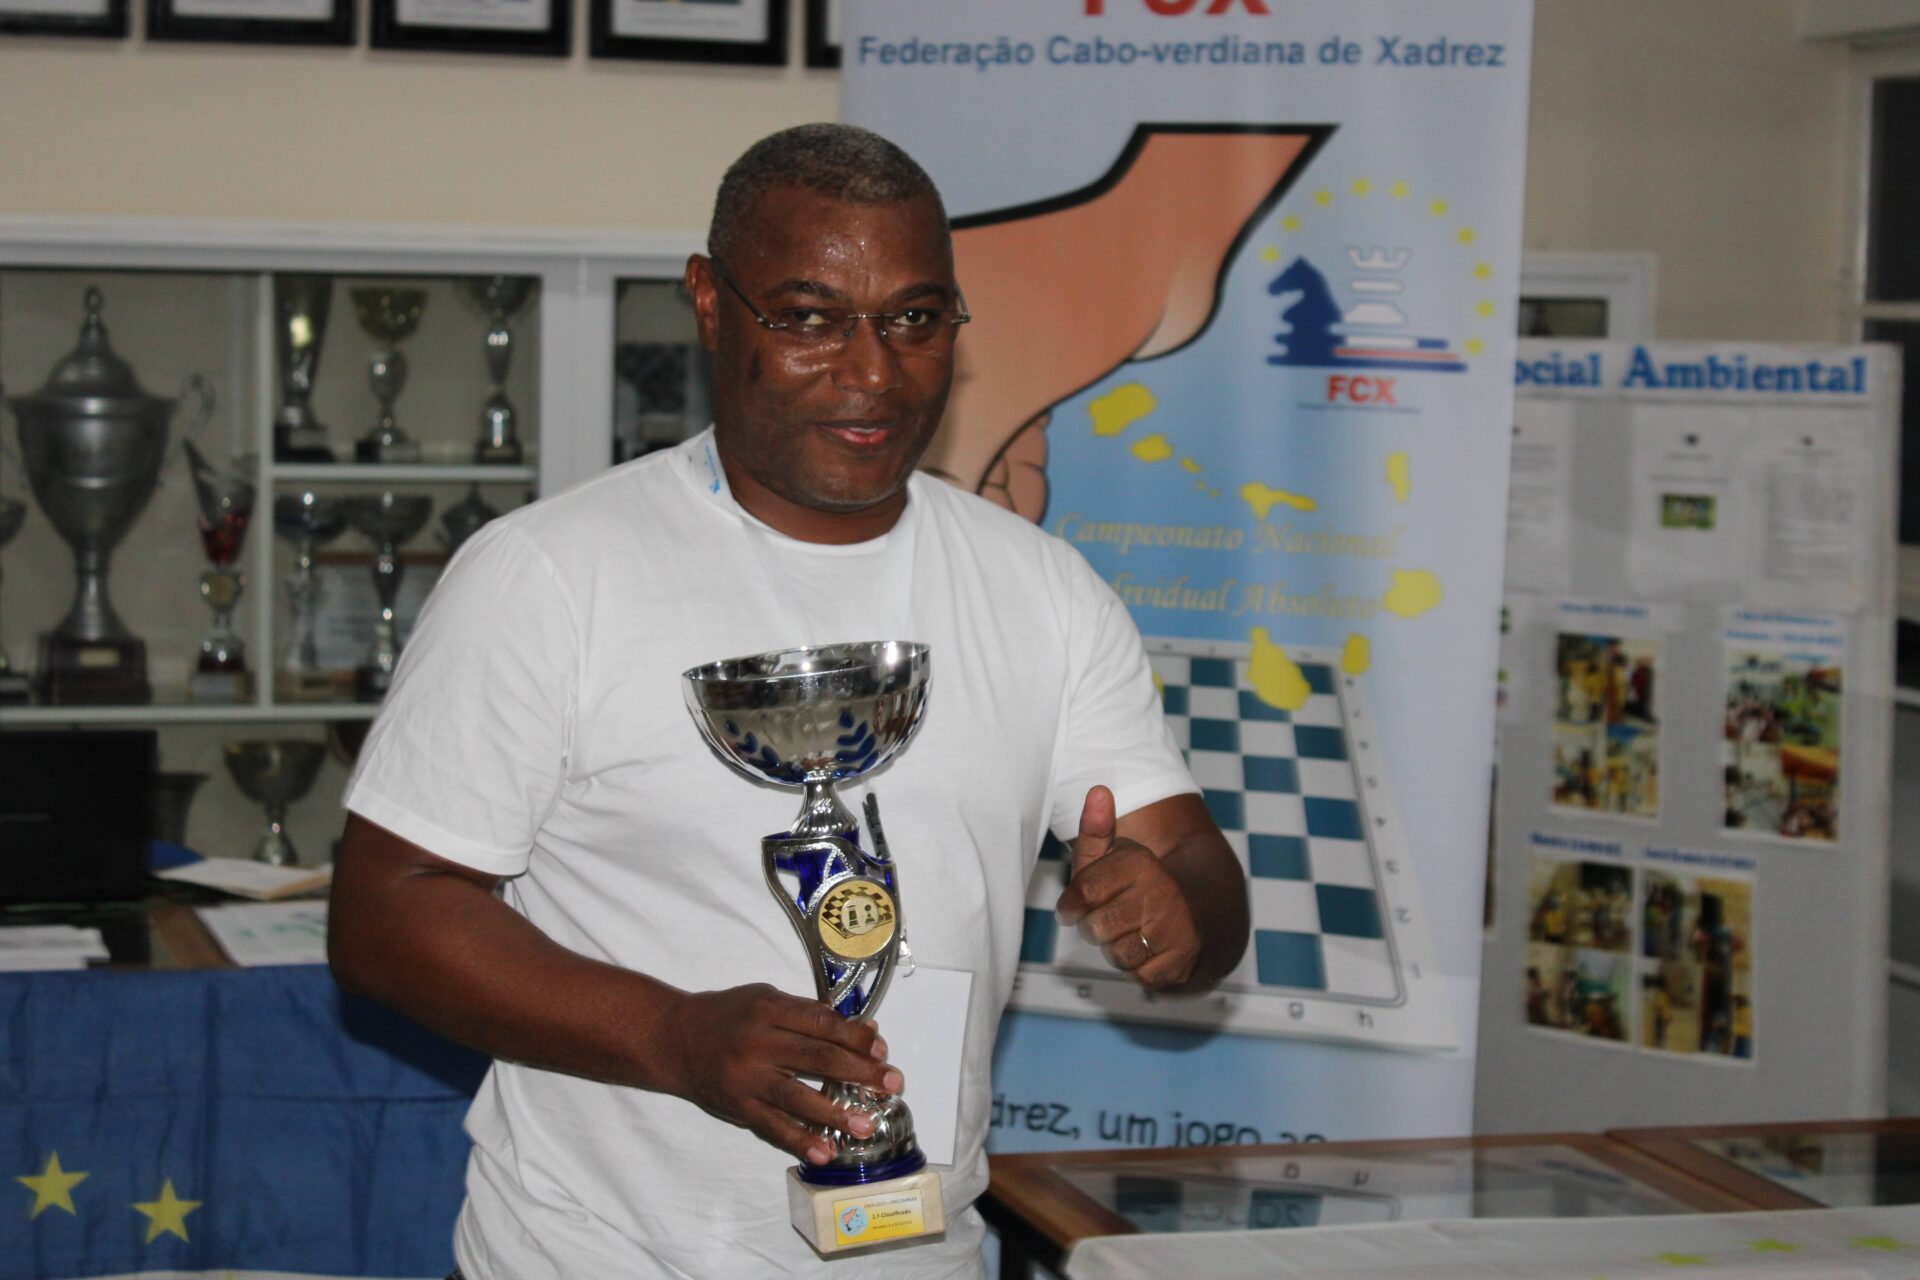 IV Campeonato Nacional Individual Absoluto :: Federação Cabo-verdiana de  Xadrez